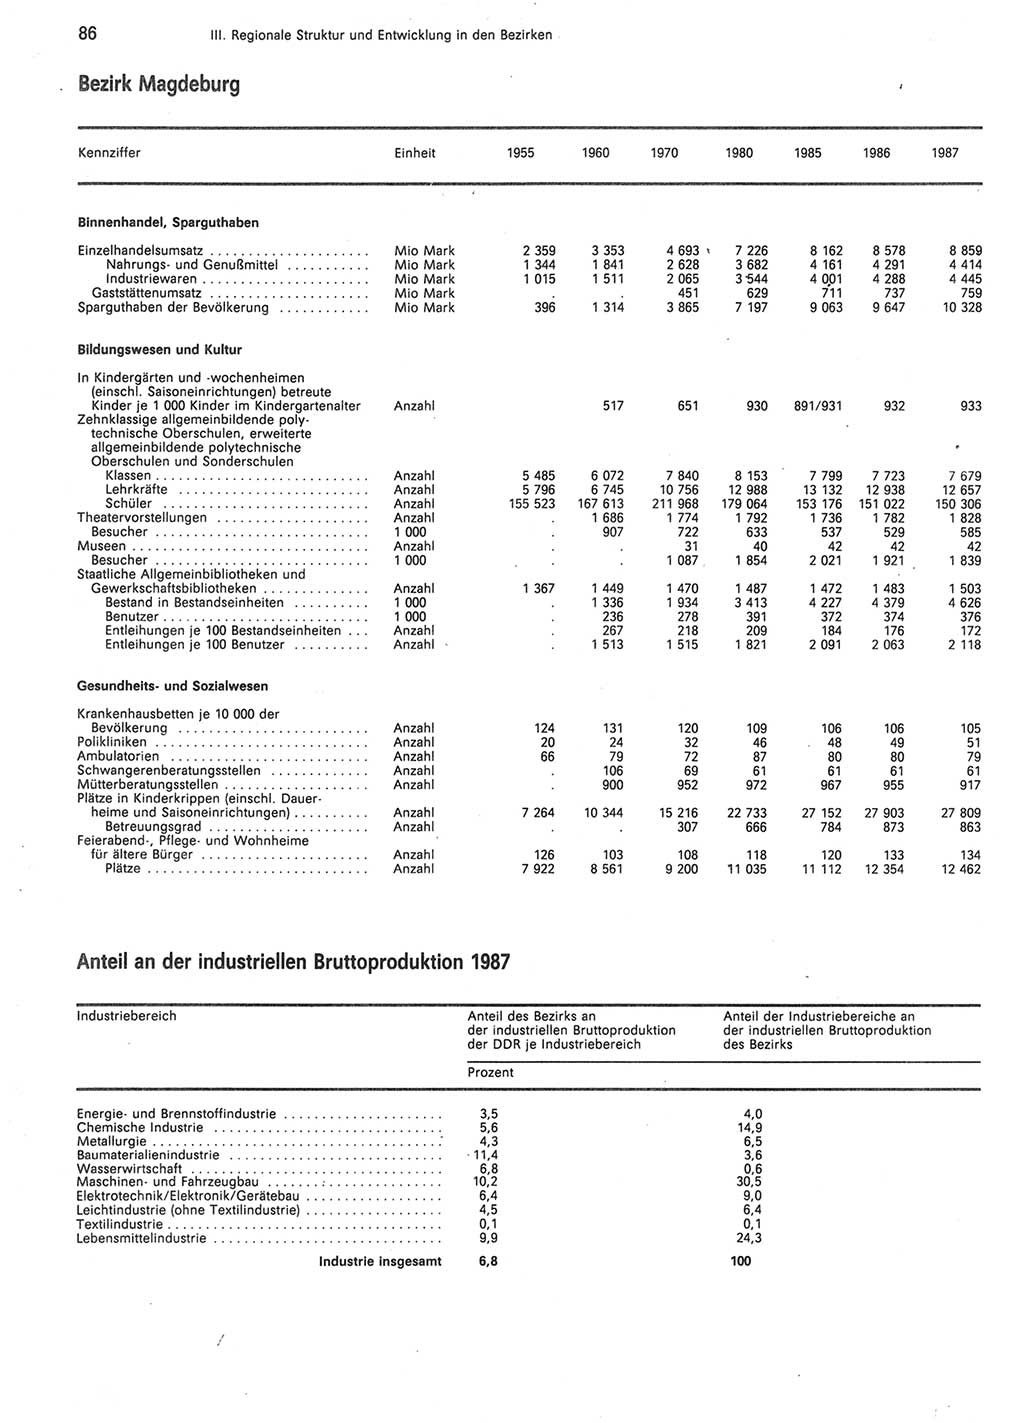 Statistisches Jahrbuch der Deutschen Demokratischen Republik (DDR) 1988, Seite 86 (Stat. Jb. DDR 1988, S. 86)